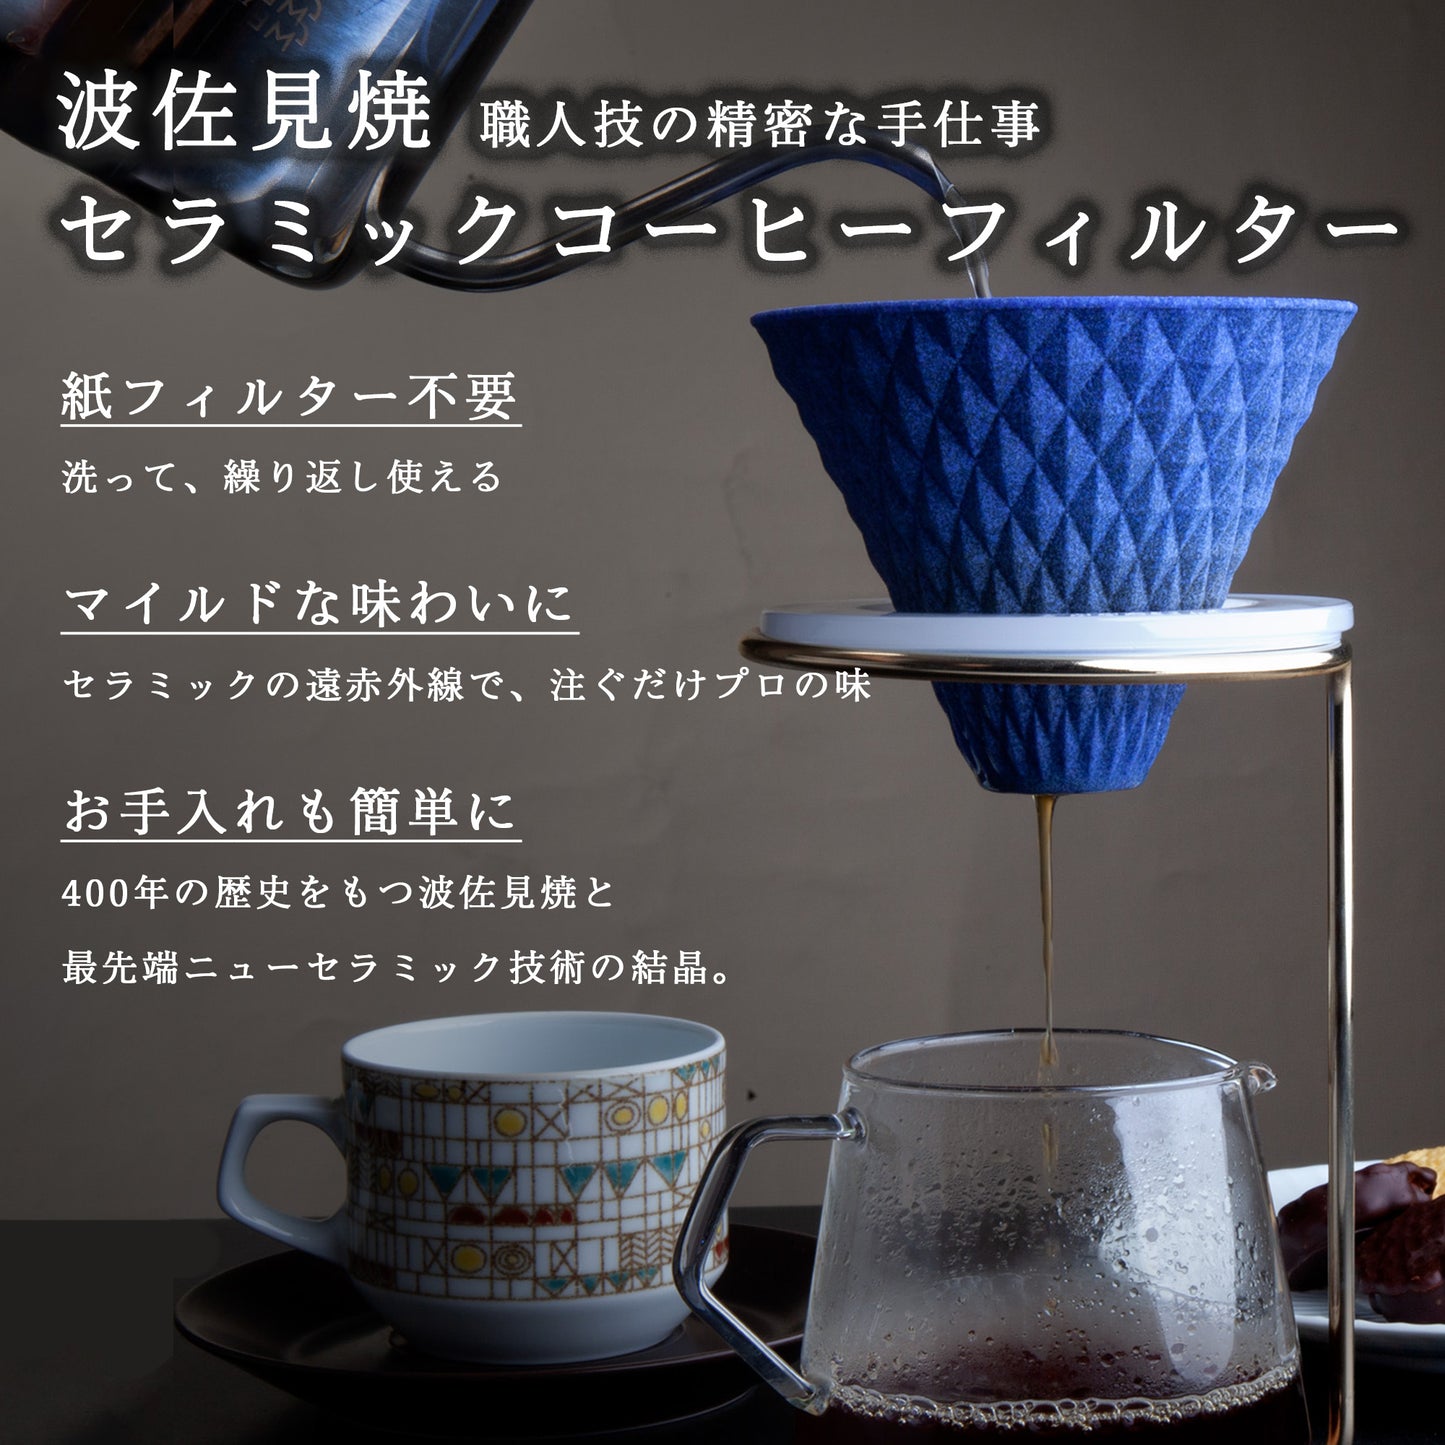 [波佐見焼] ekubo セラミックコーヒーフィルター Ultramarine blue